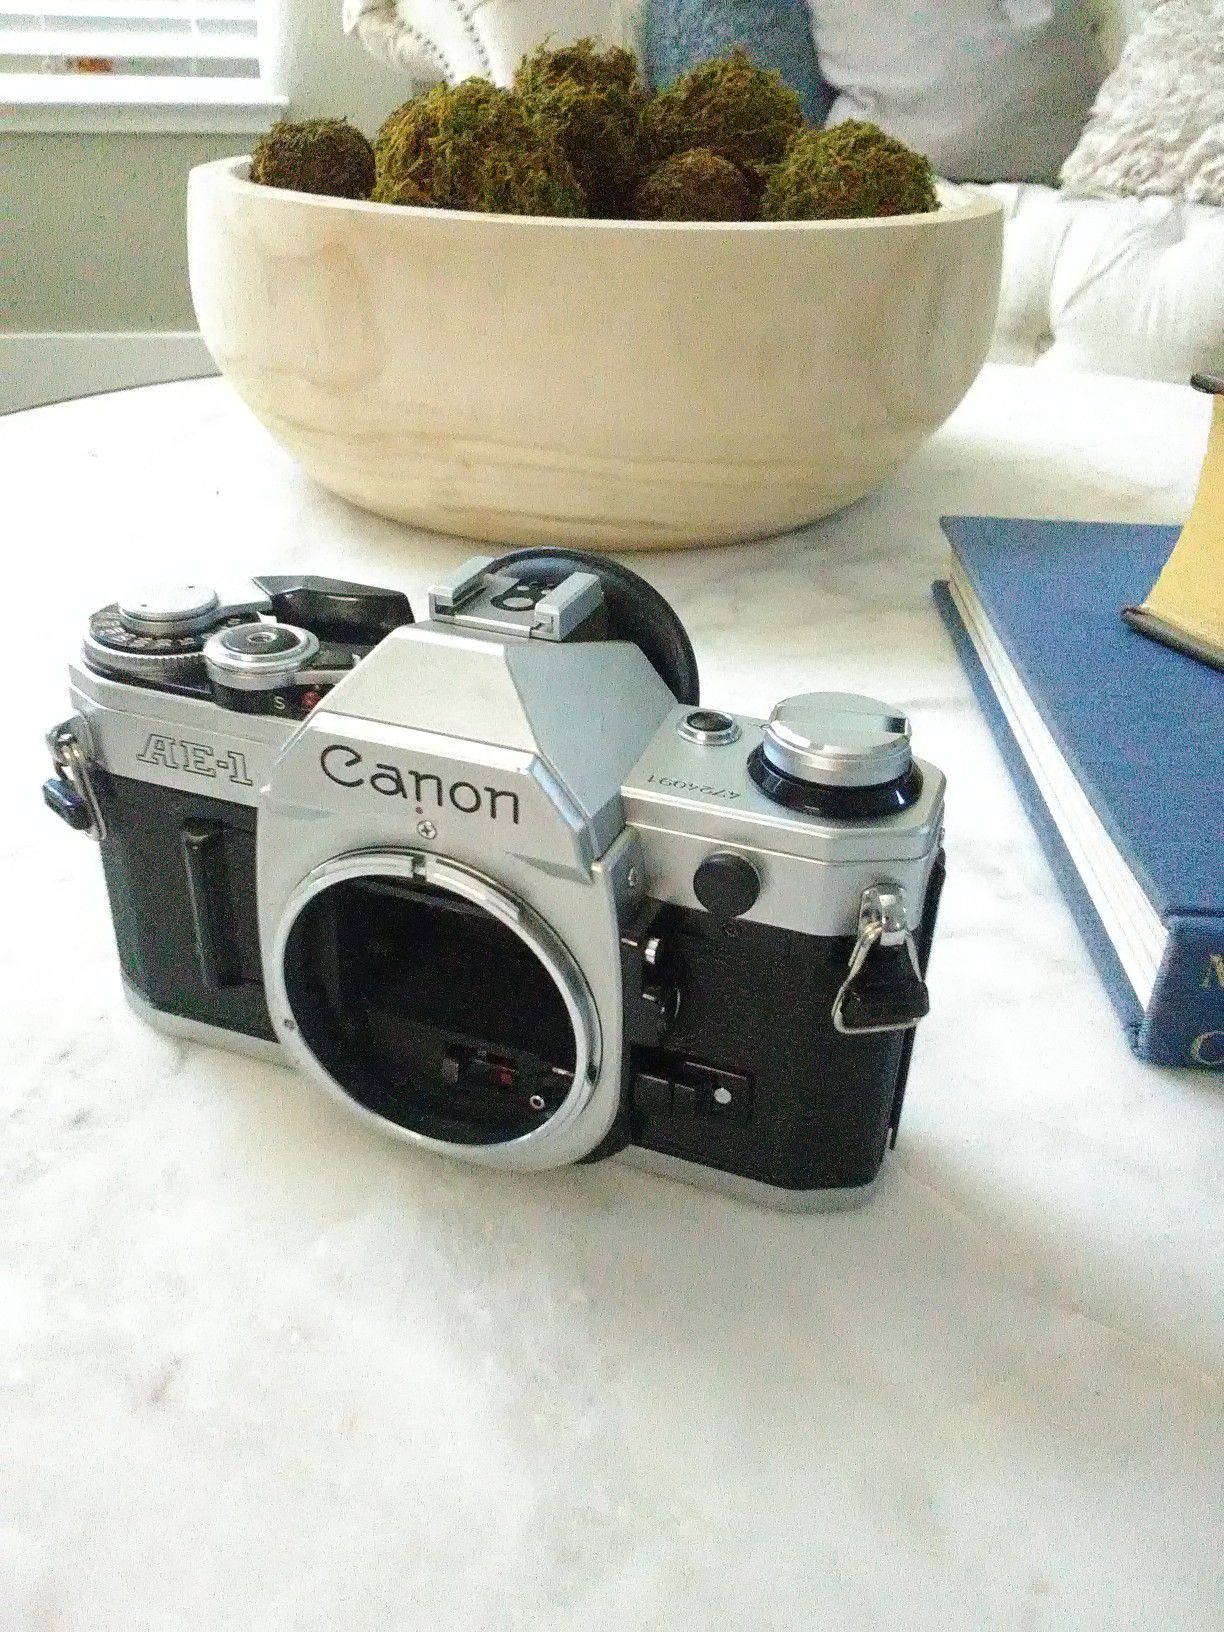 Canon AE-1 film camera